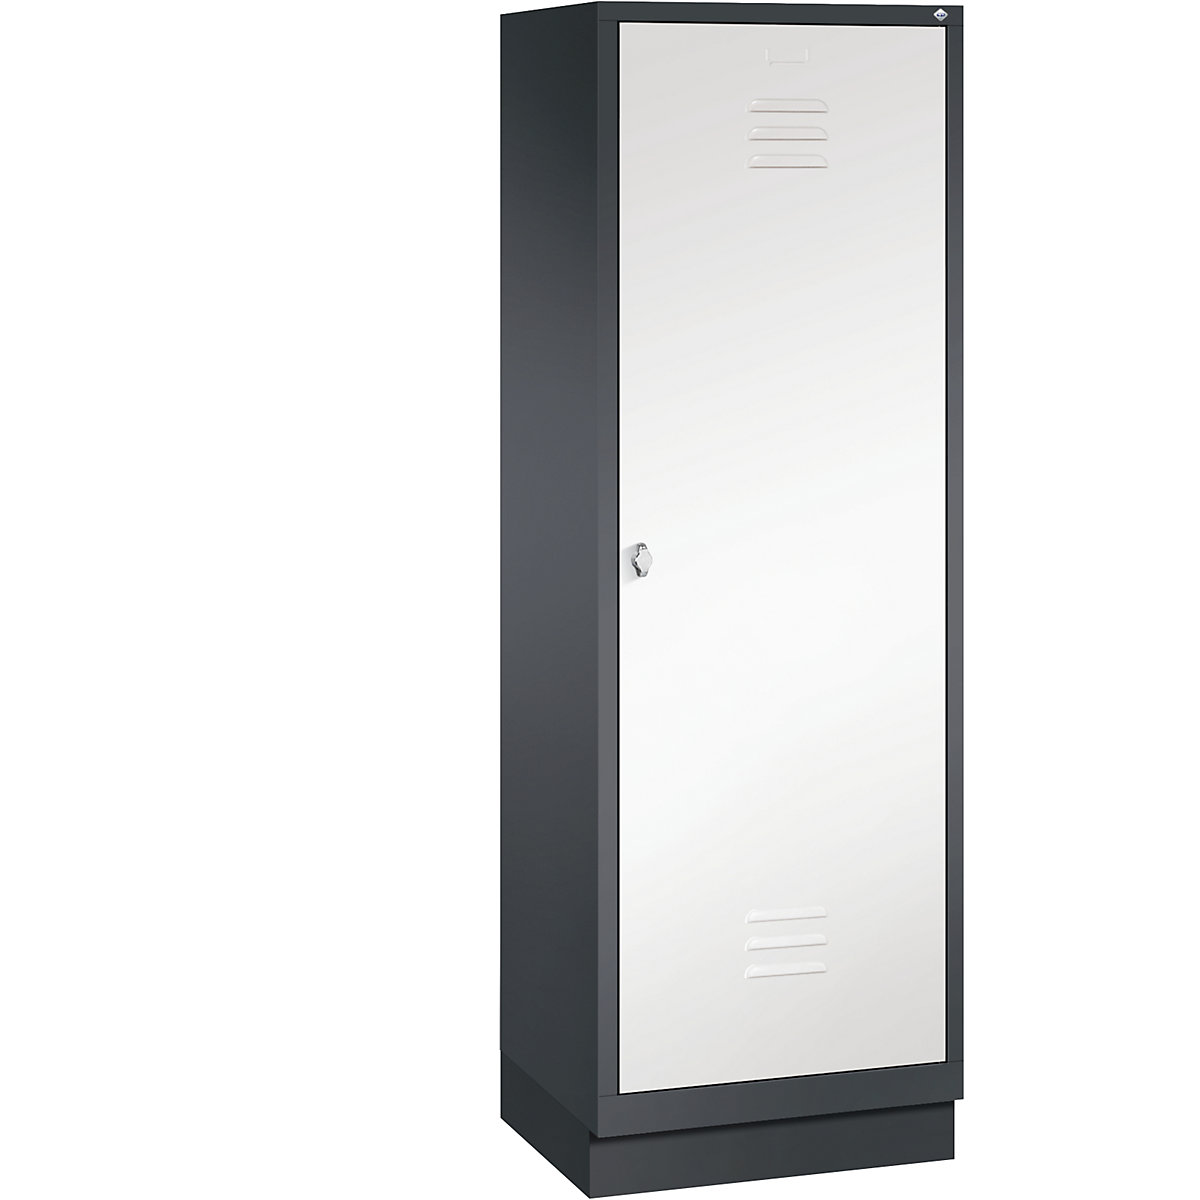 Šatní skříň se soklem CLASSIC s dveřmi přes 2 oddíly – C+P, 2 oddíly, šířka oddílu 300 mm, černošedá / dopravní bílá